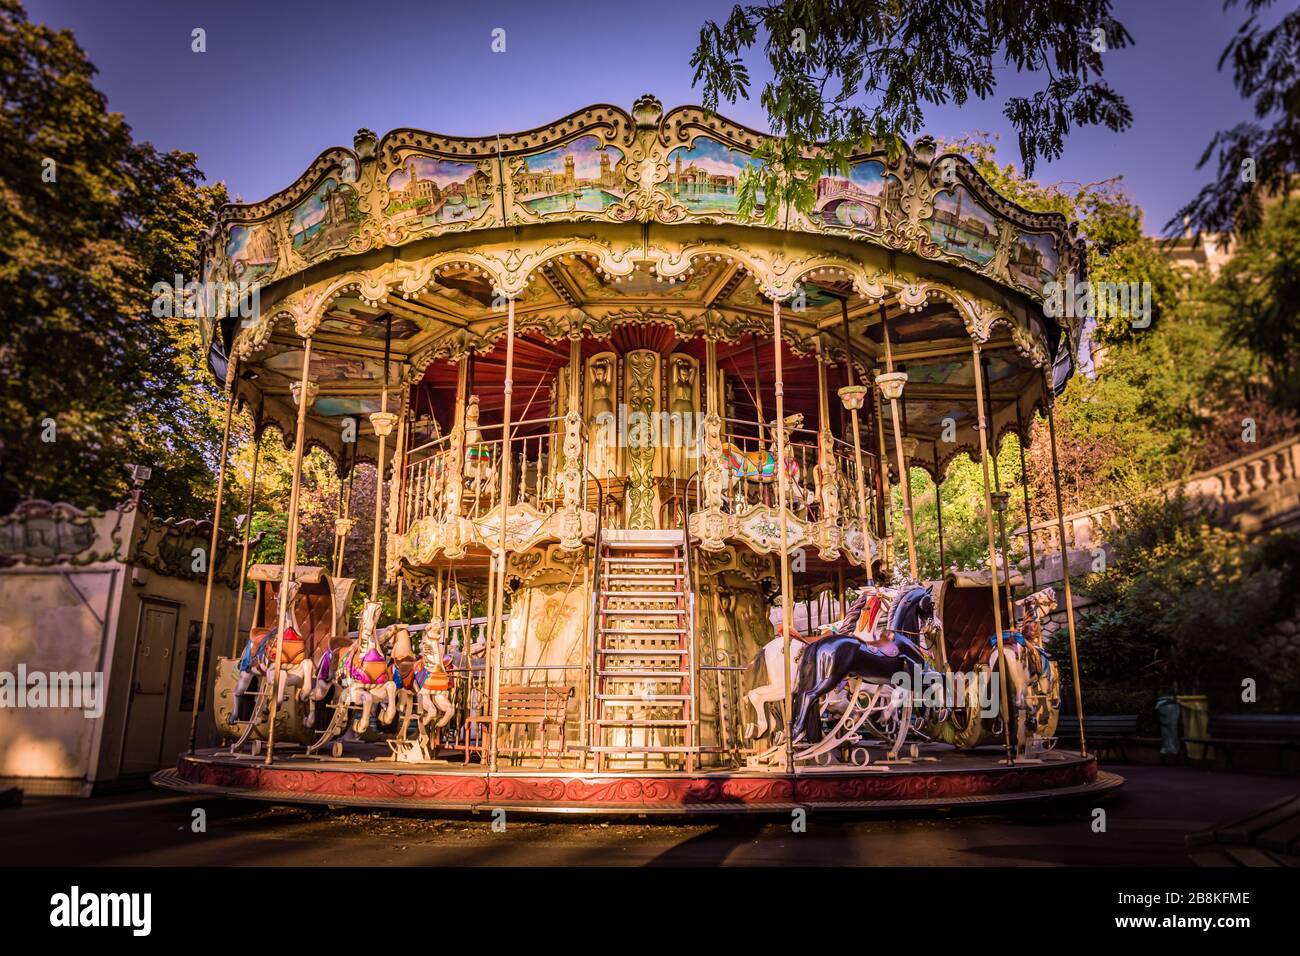 Parcours traditionnel du parc des expositions de Montmartre, Paris, France. Pris sur une chaude, Golden automne matin en septembre Banque D'Images